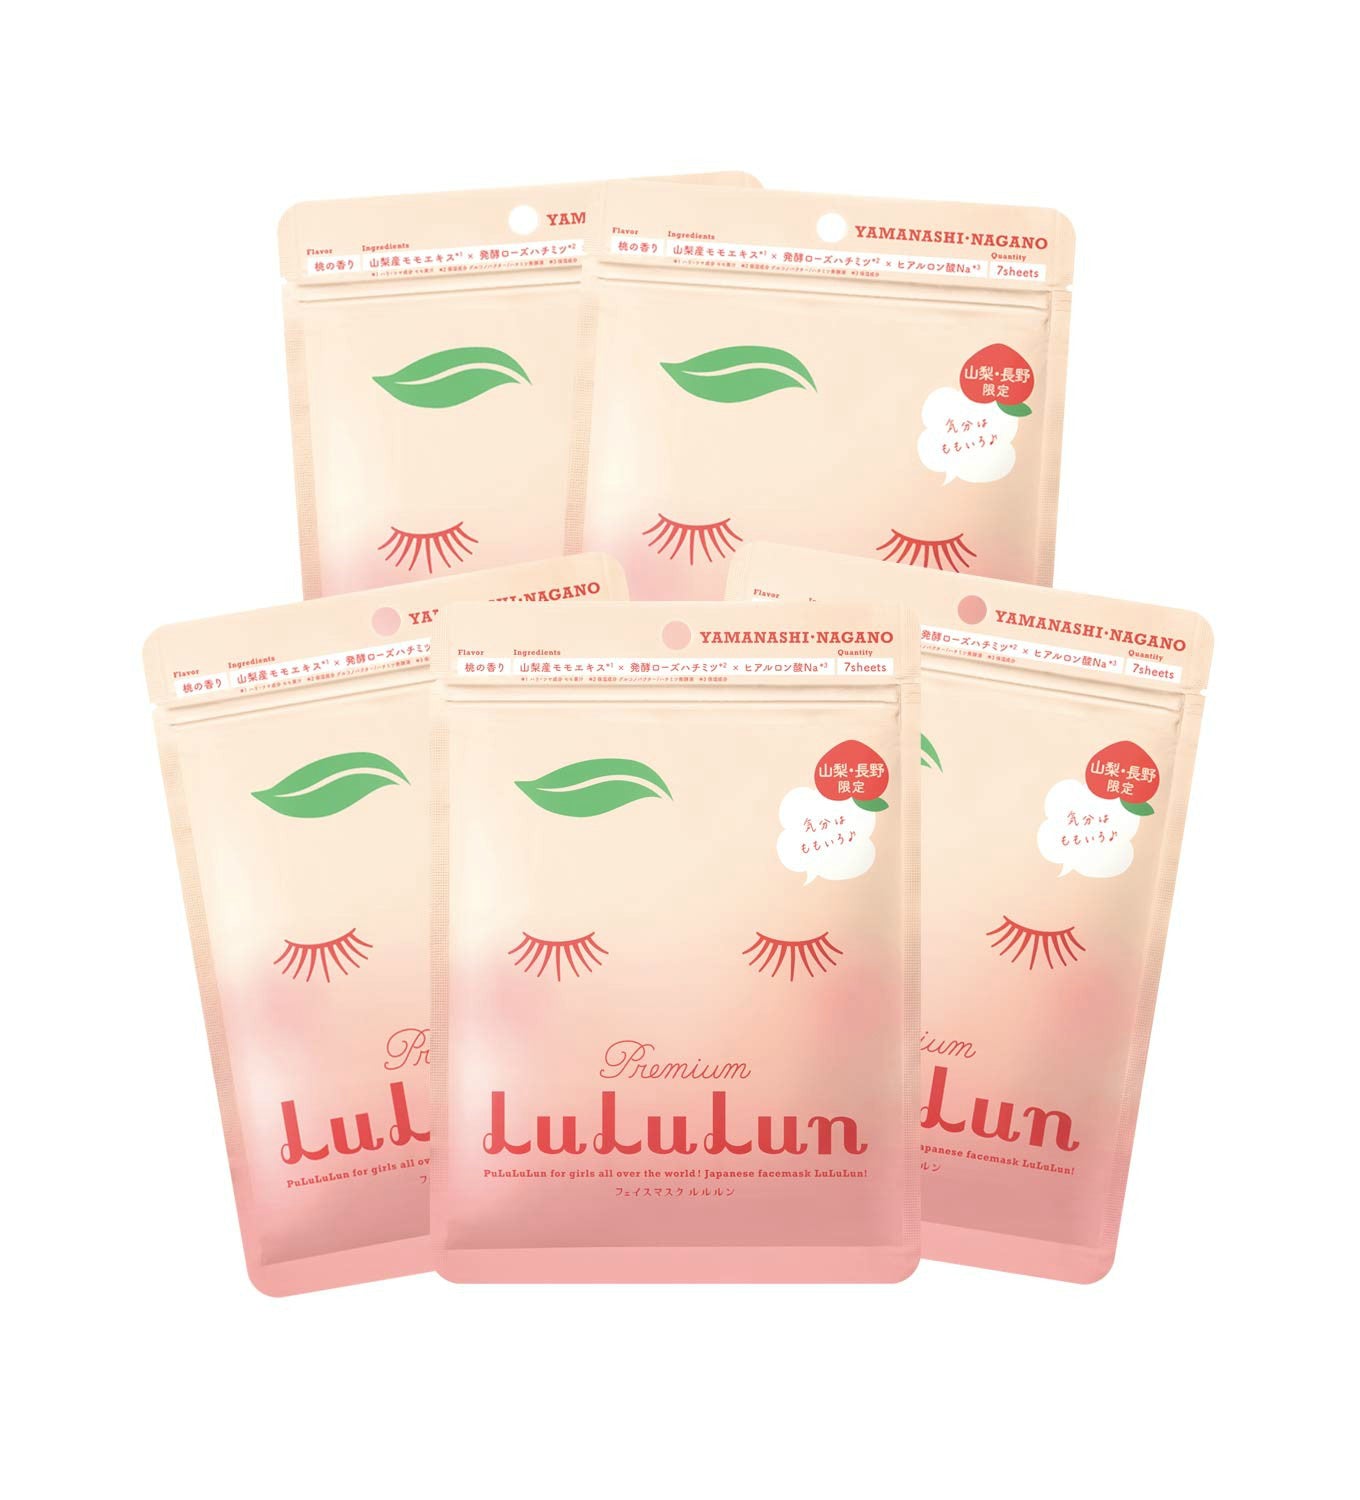 Lululun 7 Days Sheet Mask - Peach (Yamanashi - Nagano) Beauty LuLuLun   